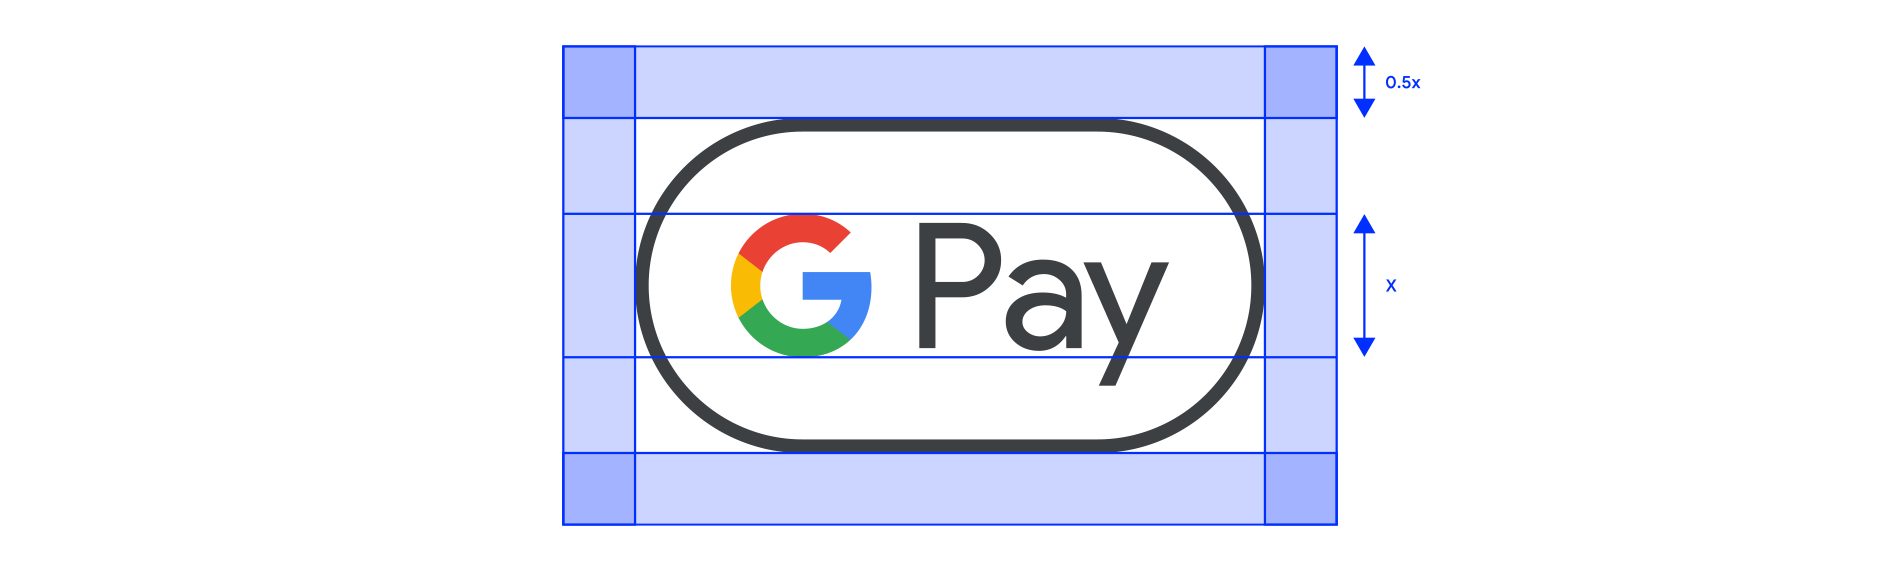 Przykład pustego obszaru wokół znaku Google Pay